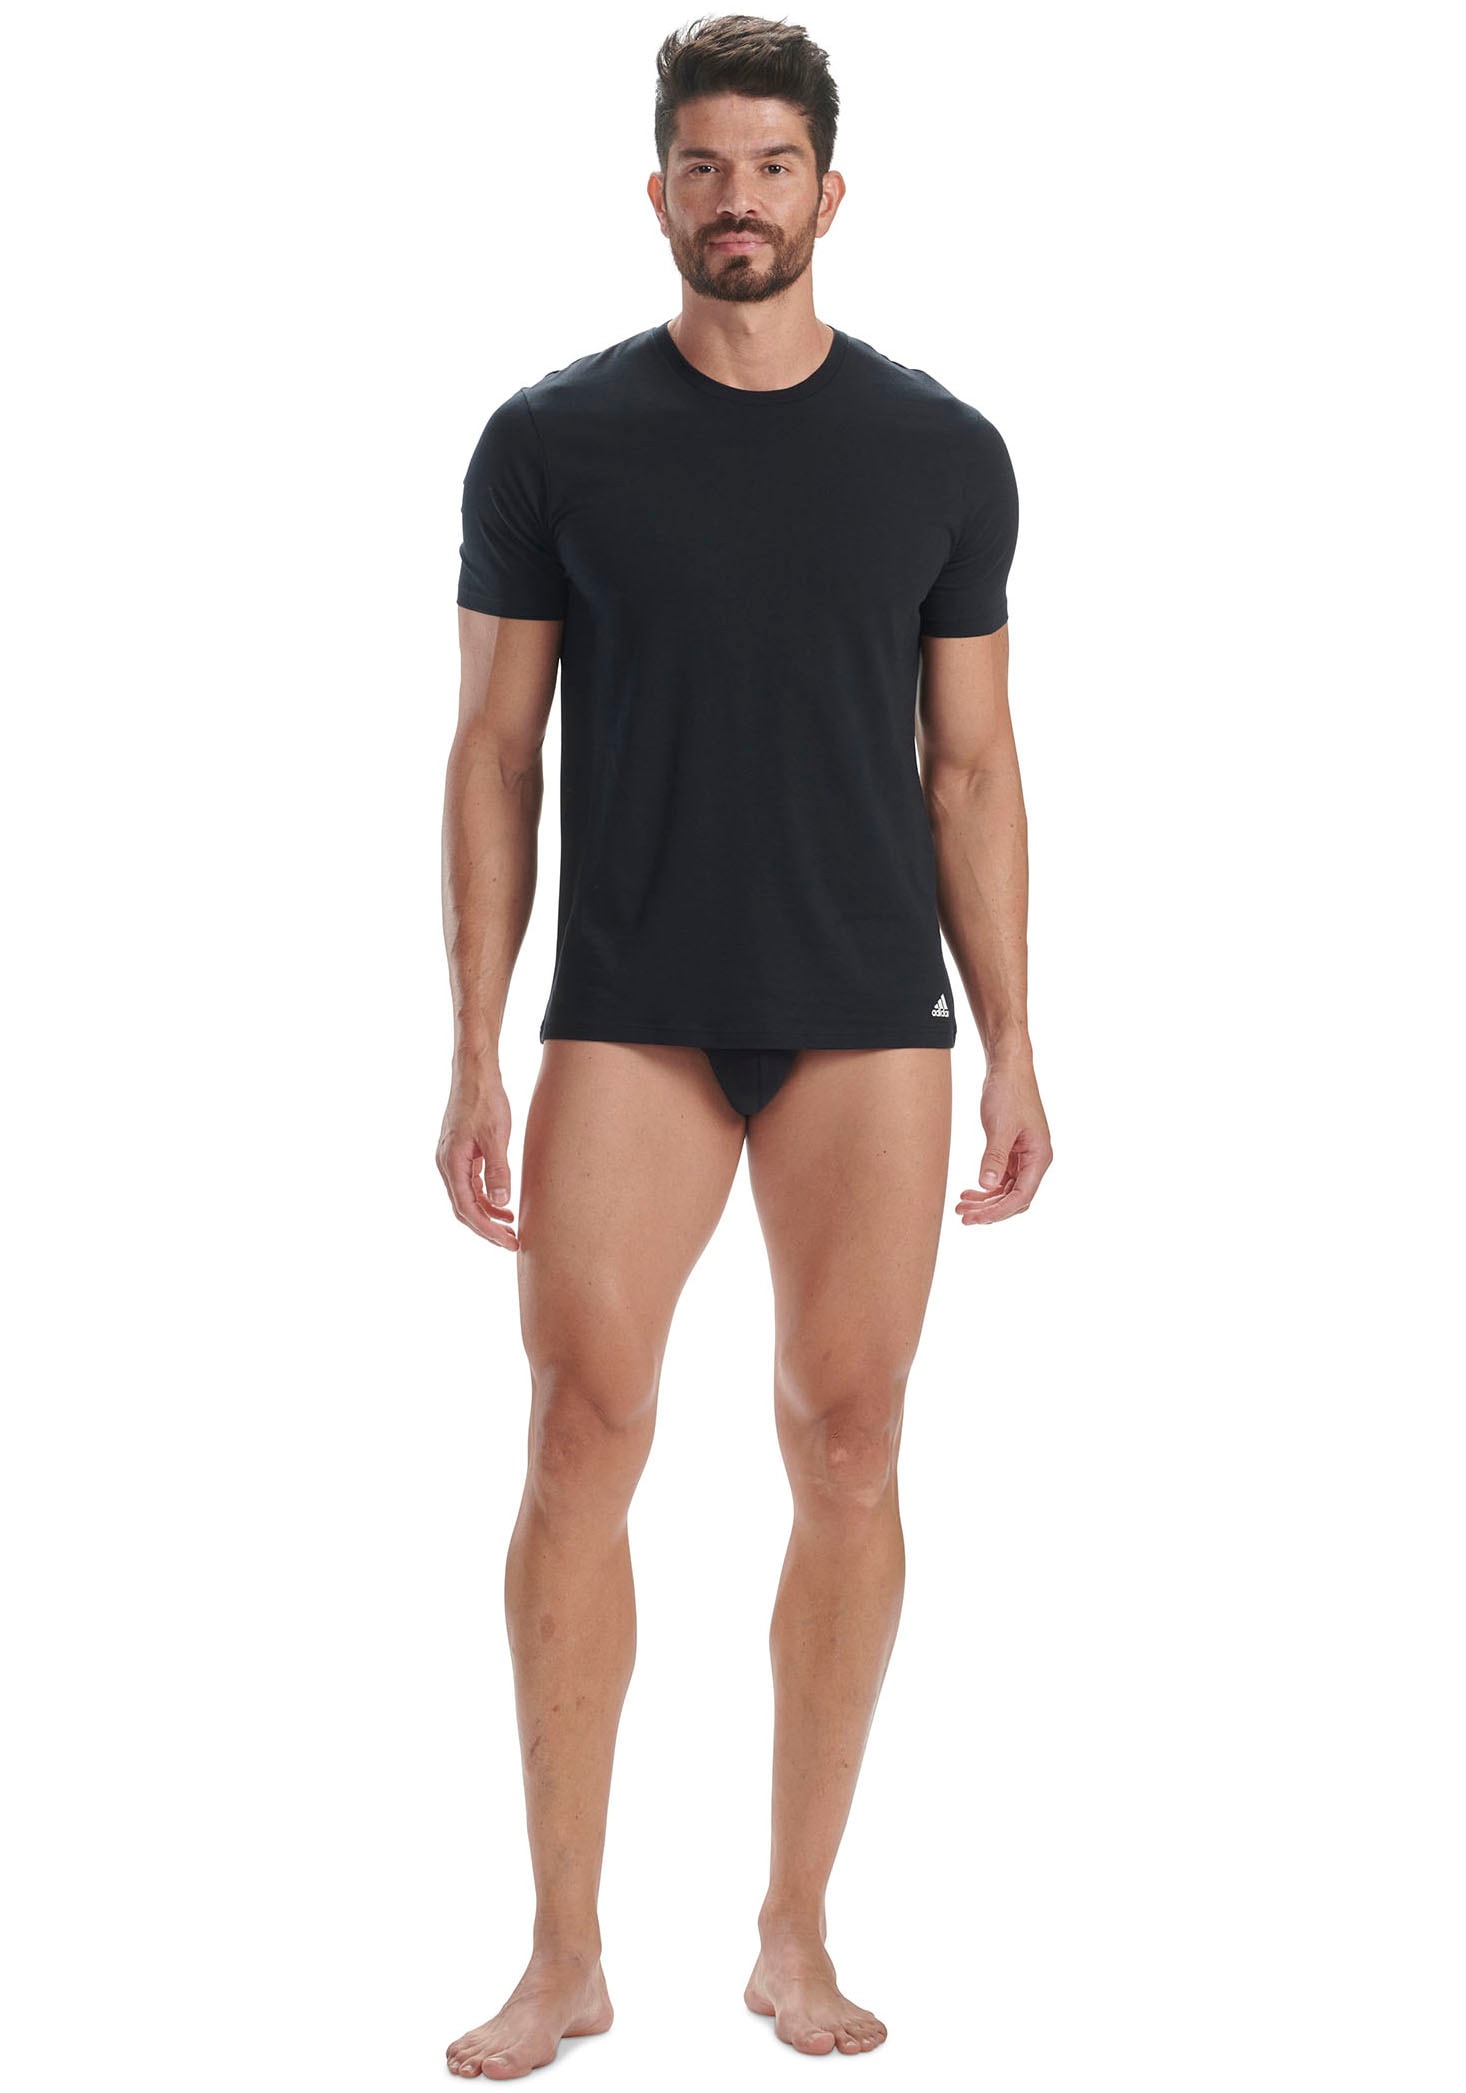 OTTO Unterhemd im Online Sportswear Shop adidas